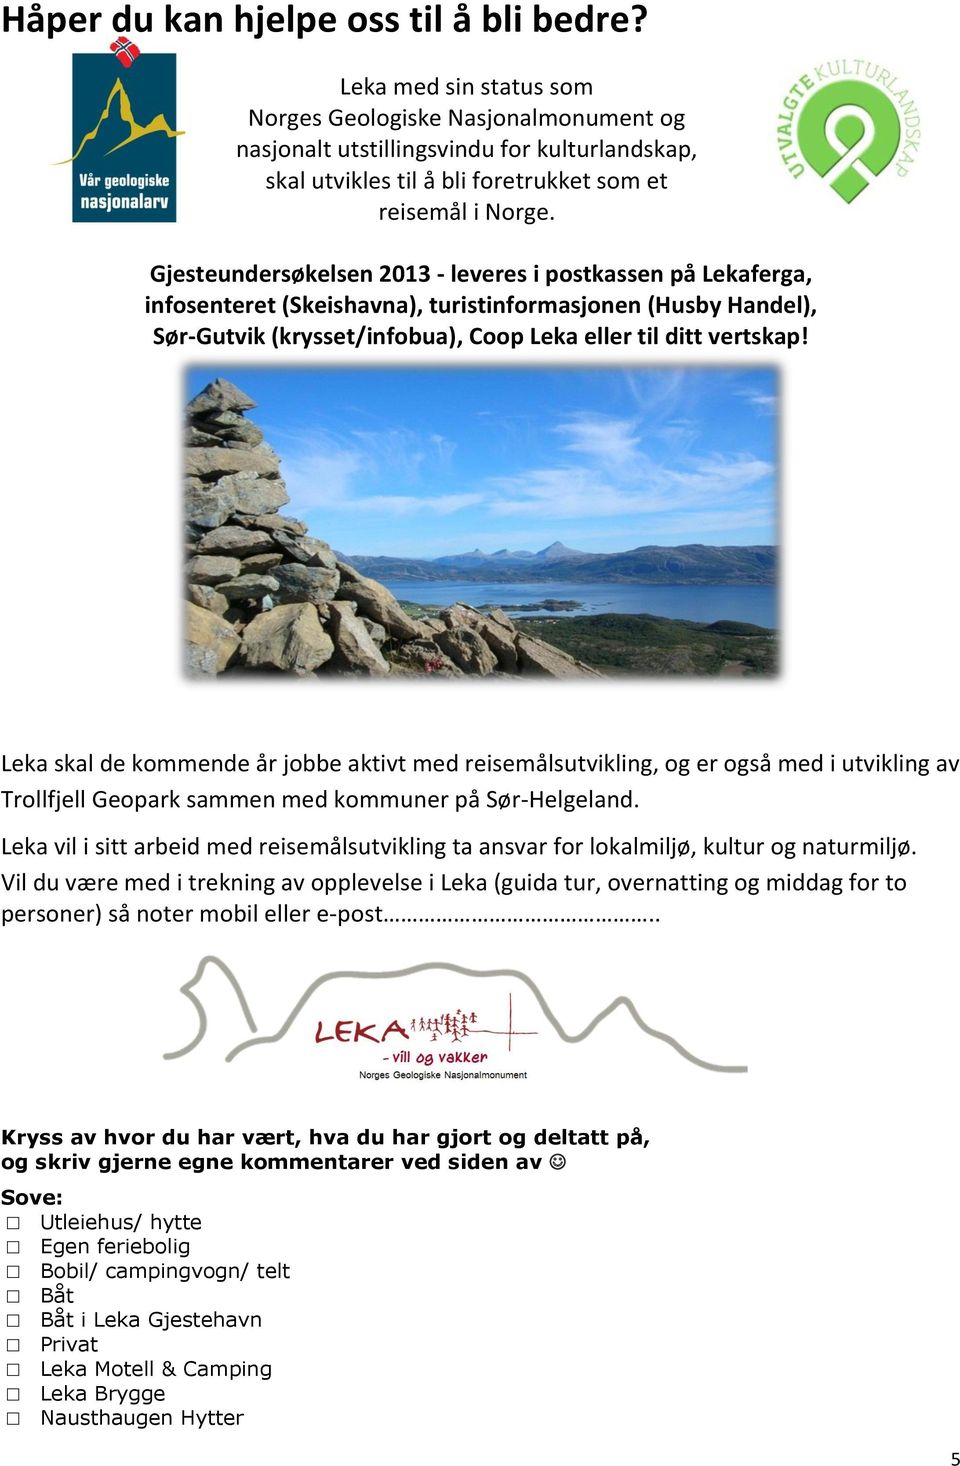 Gjesteundersøkelsen 2013 - leveres i postkassen på Lekaferga, infosenteret (Skeishavna), turistinformasjonen (Husby Handel), Sør-Gutvik (krysset/infobua), Coop Leka eller til ditt vertskap!